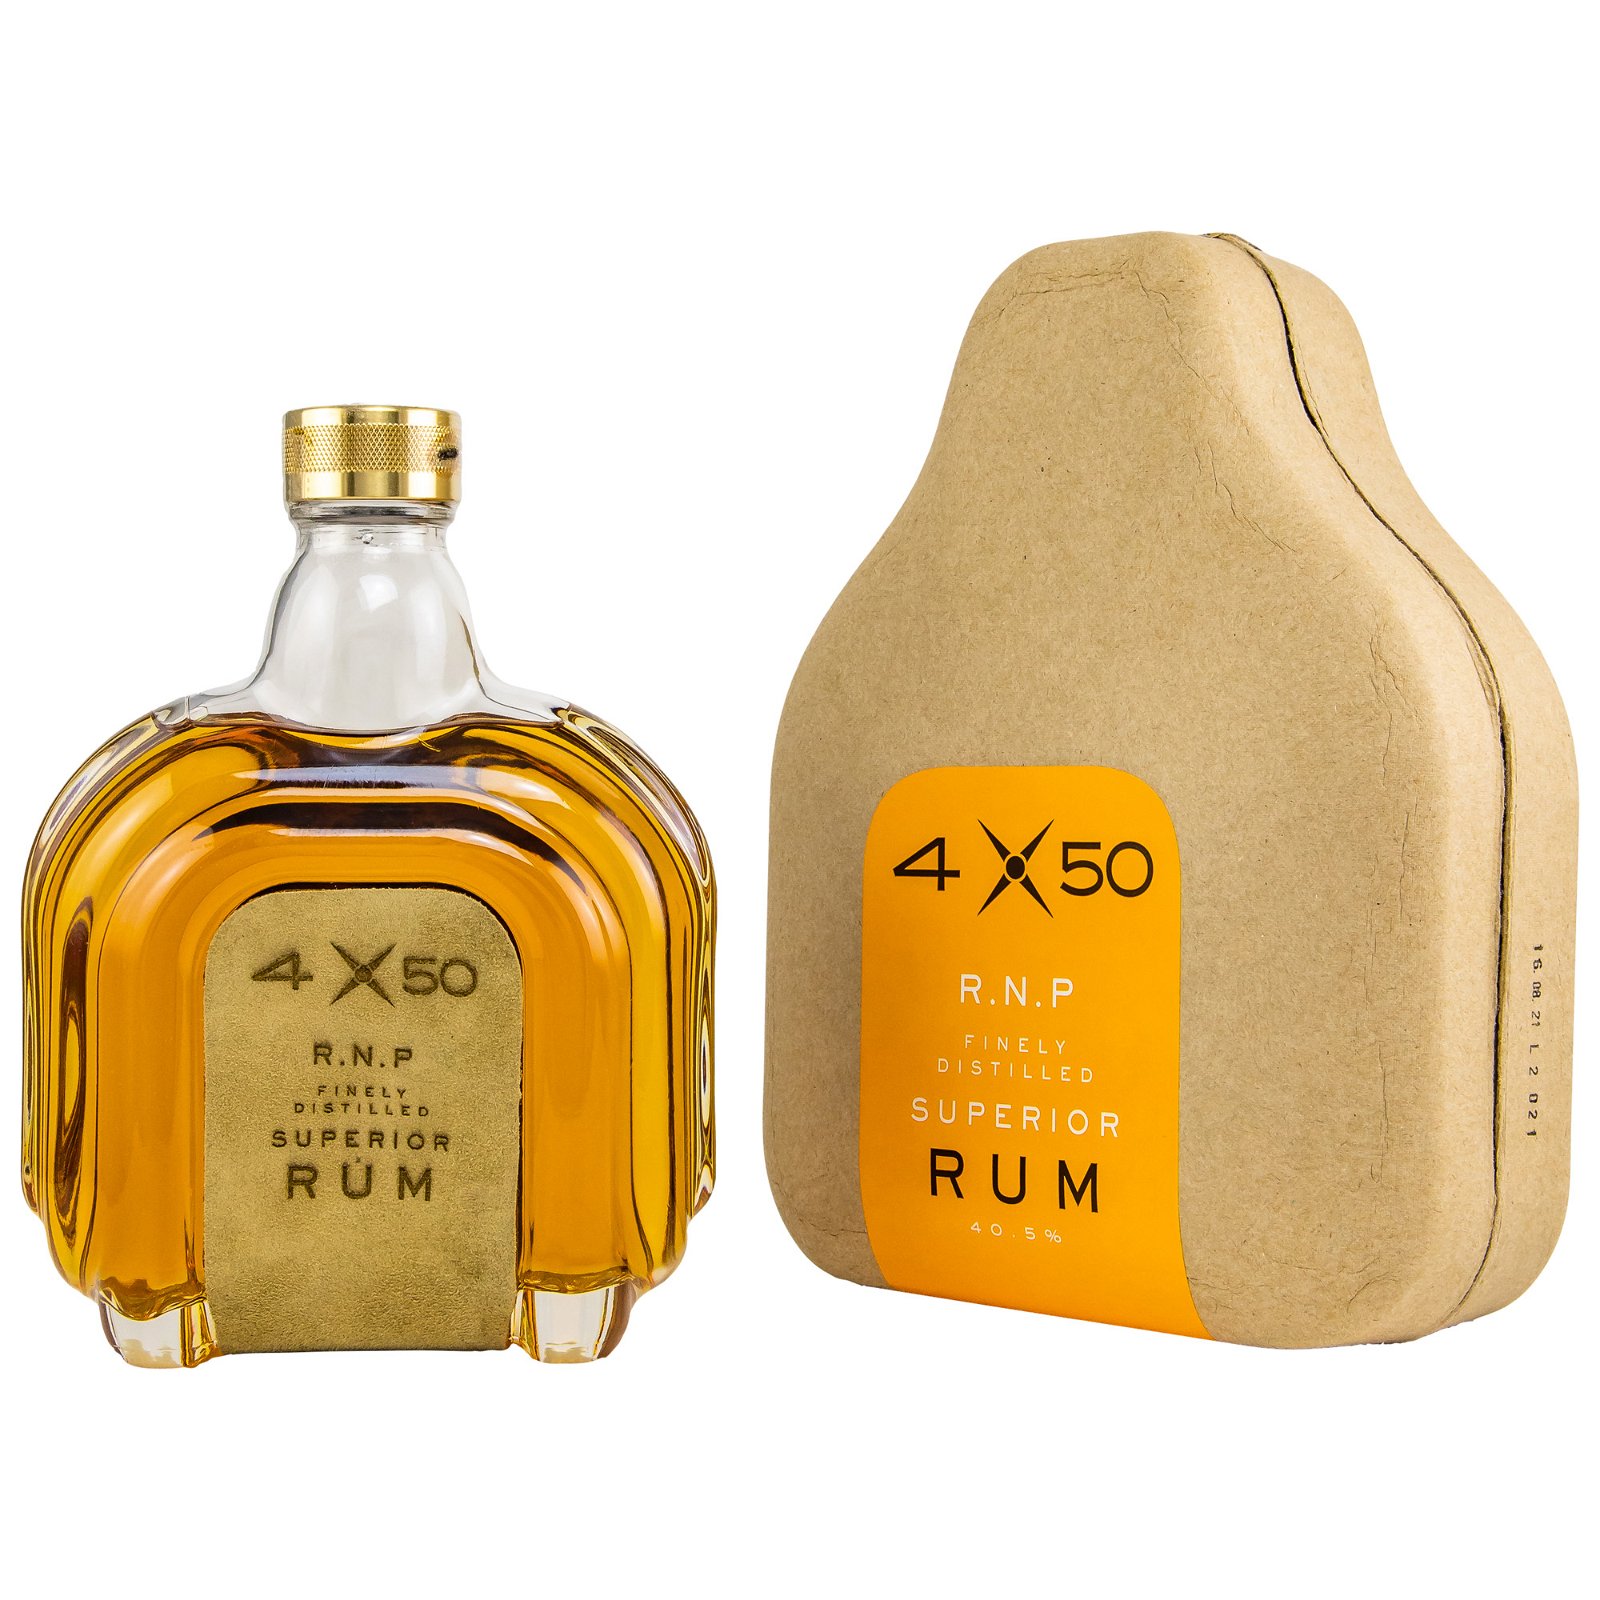 4x50 R.N.P. Finely Distilled Superior Rum